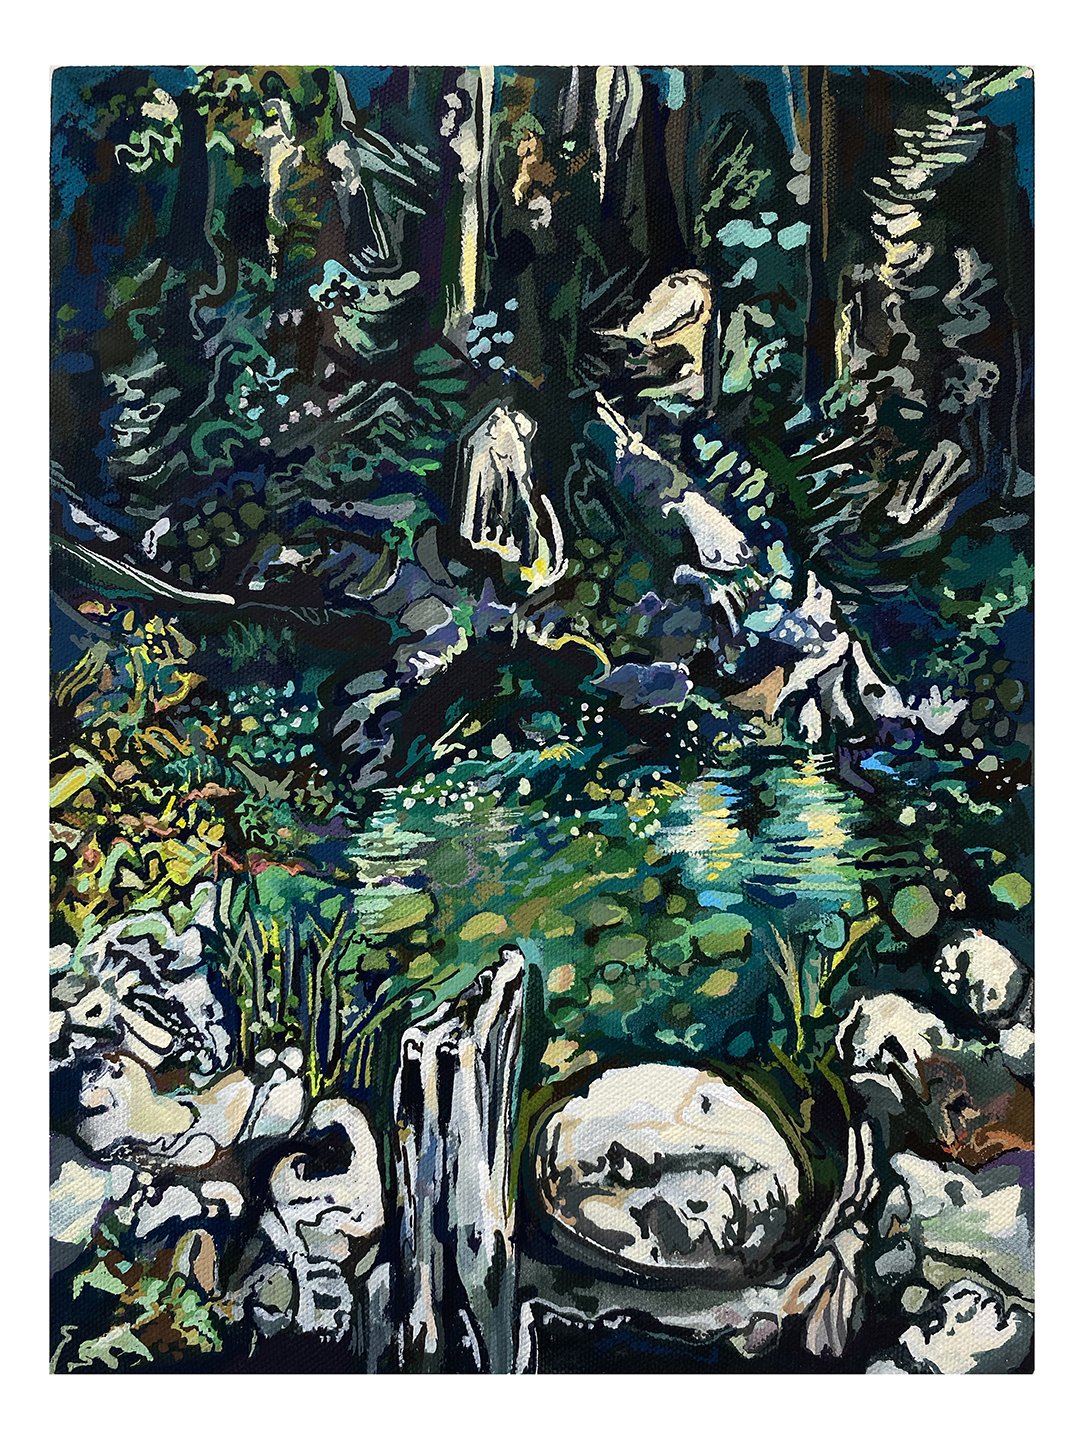  Maria Calandra, North Yuba River Swim, 2021, acrylic on green cotton canvas, 12 x 9 inches 